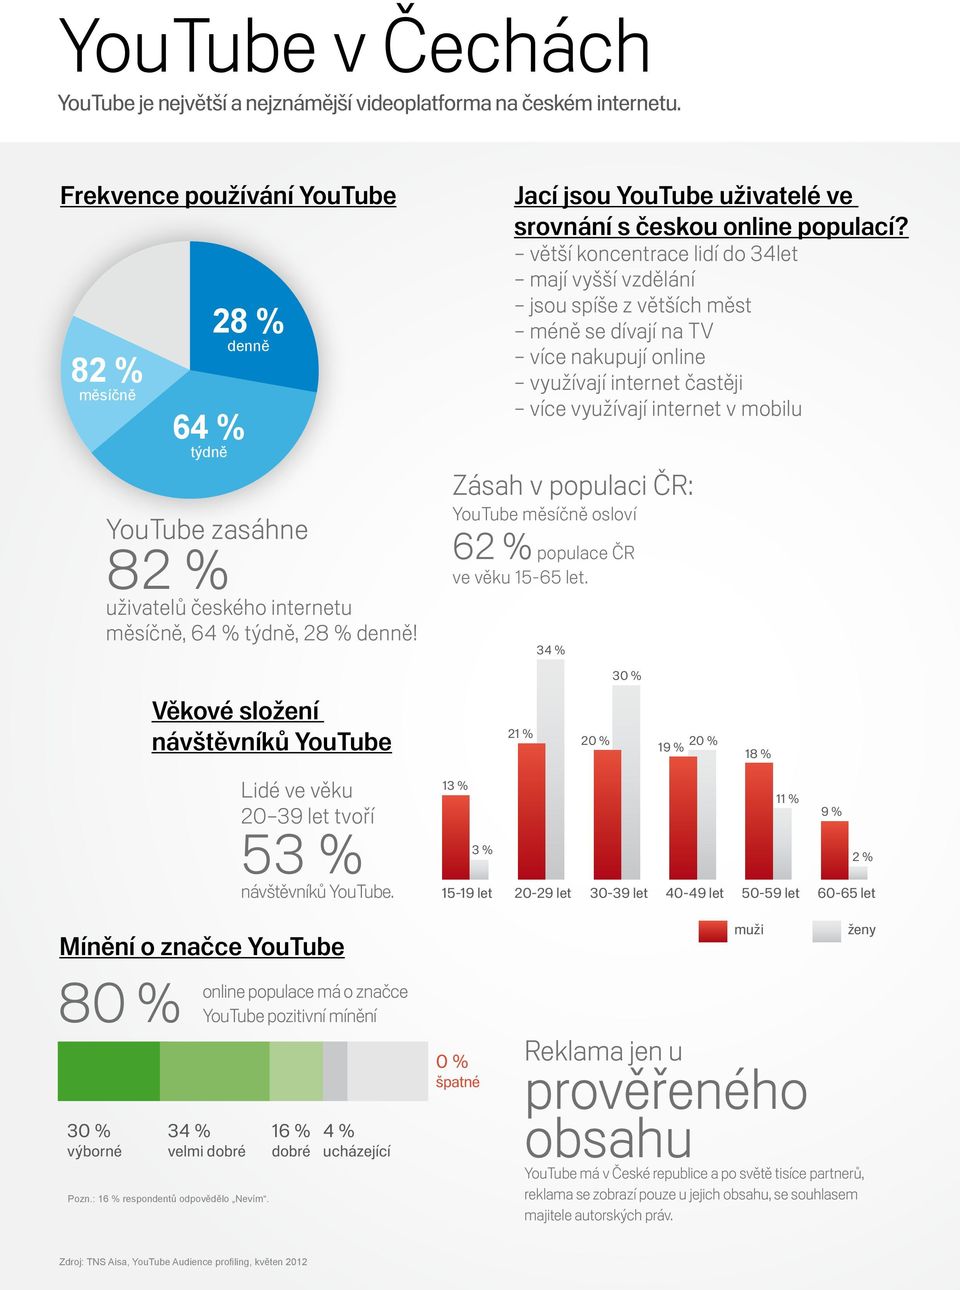 Jací jsou YouTube uživatelé ve srovnání s českou online populací?